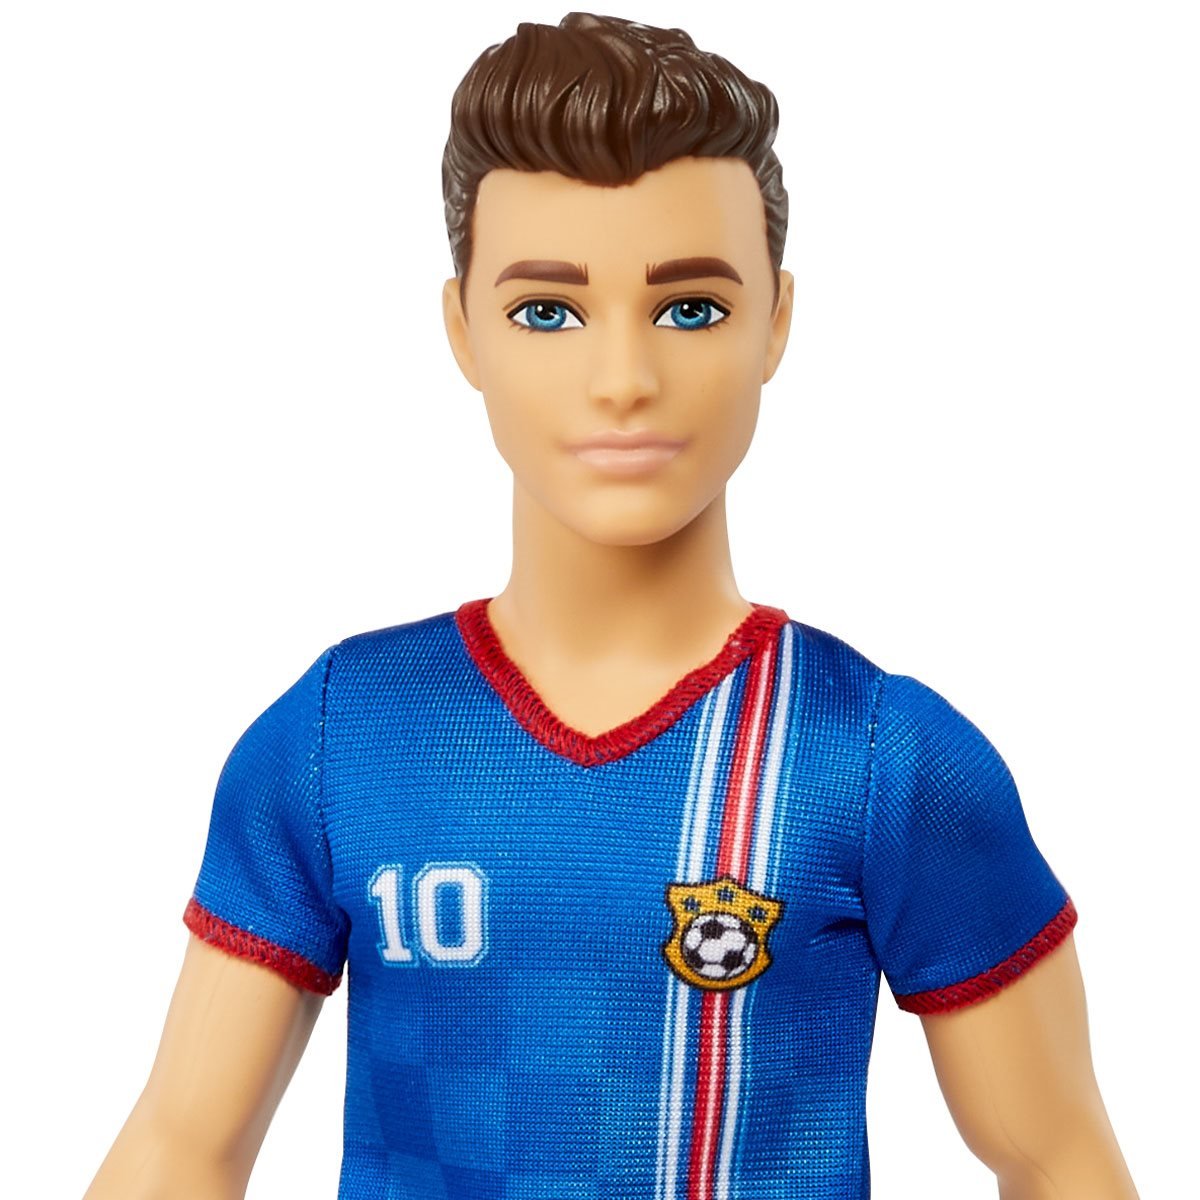 Barbie Ken Footballer Careers Doll